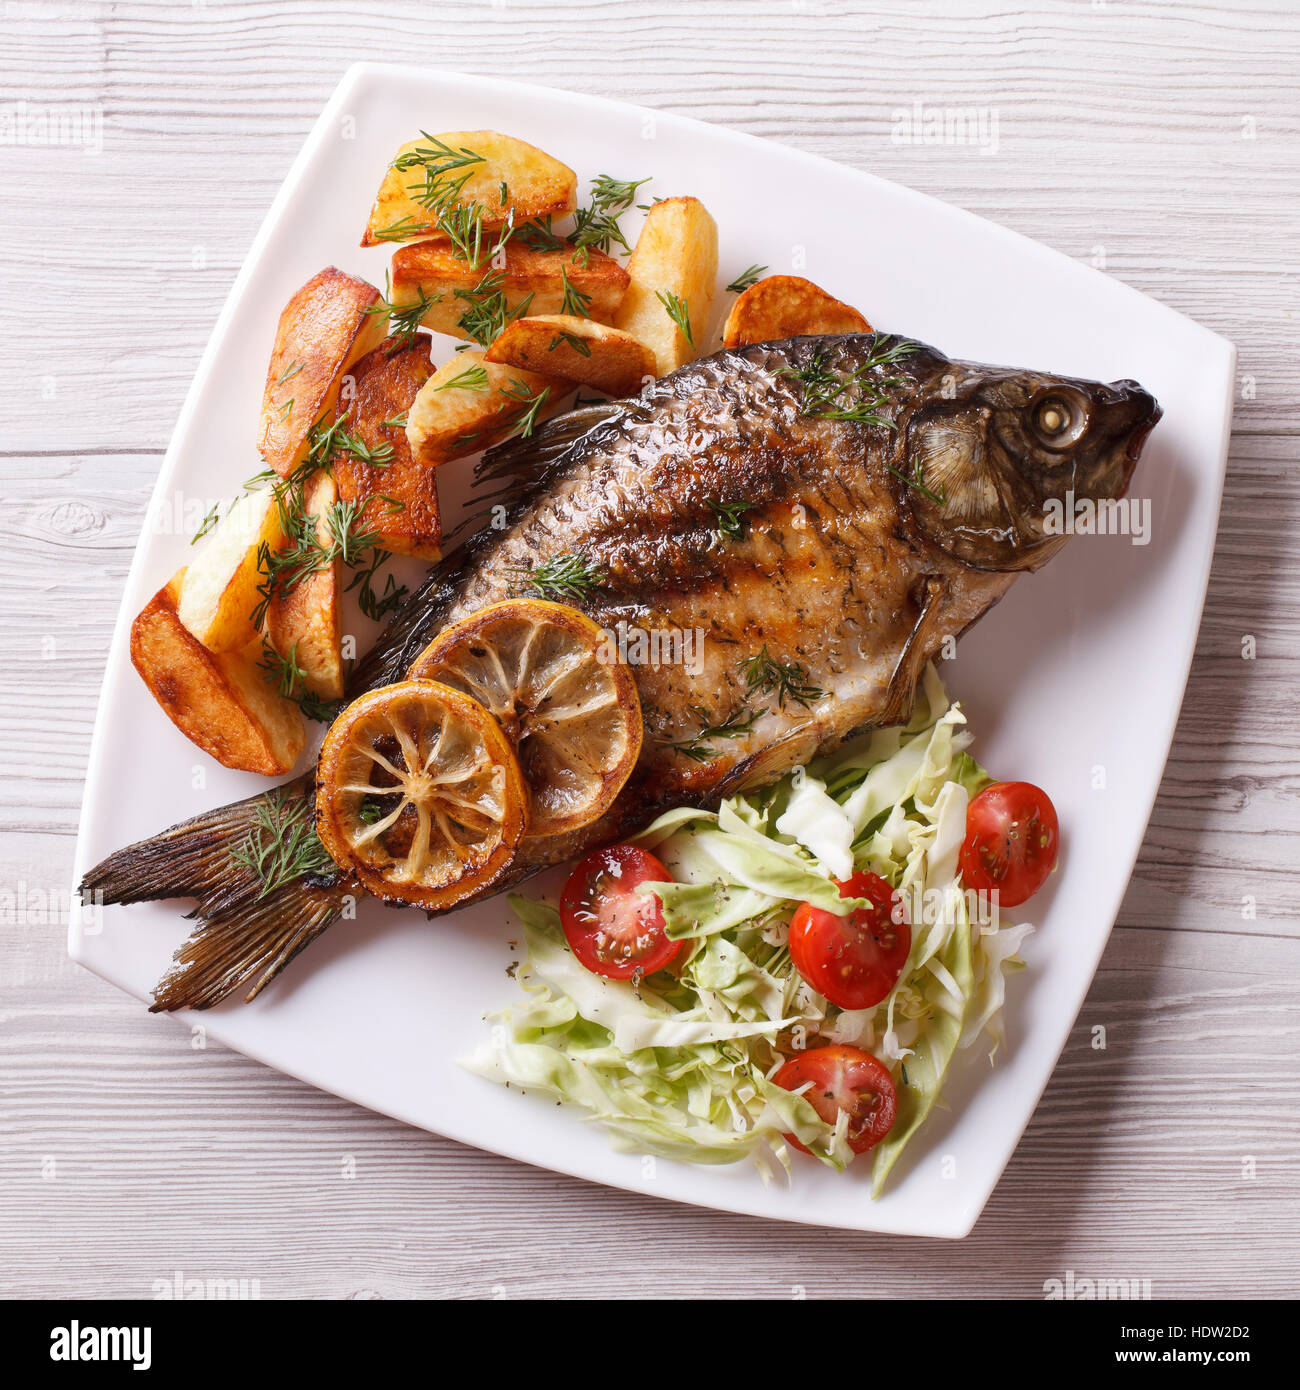 Le poisson grillé avec frites et salade sur une assiette. Vue de dessus  libre Photo Stock - Alamy